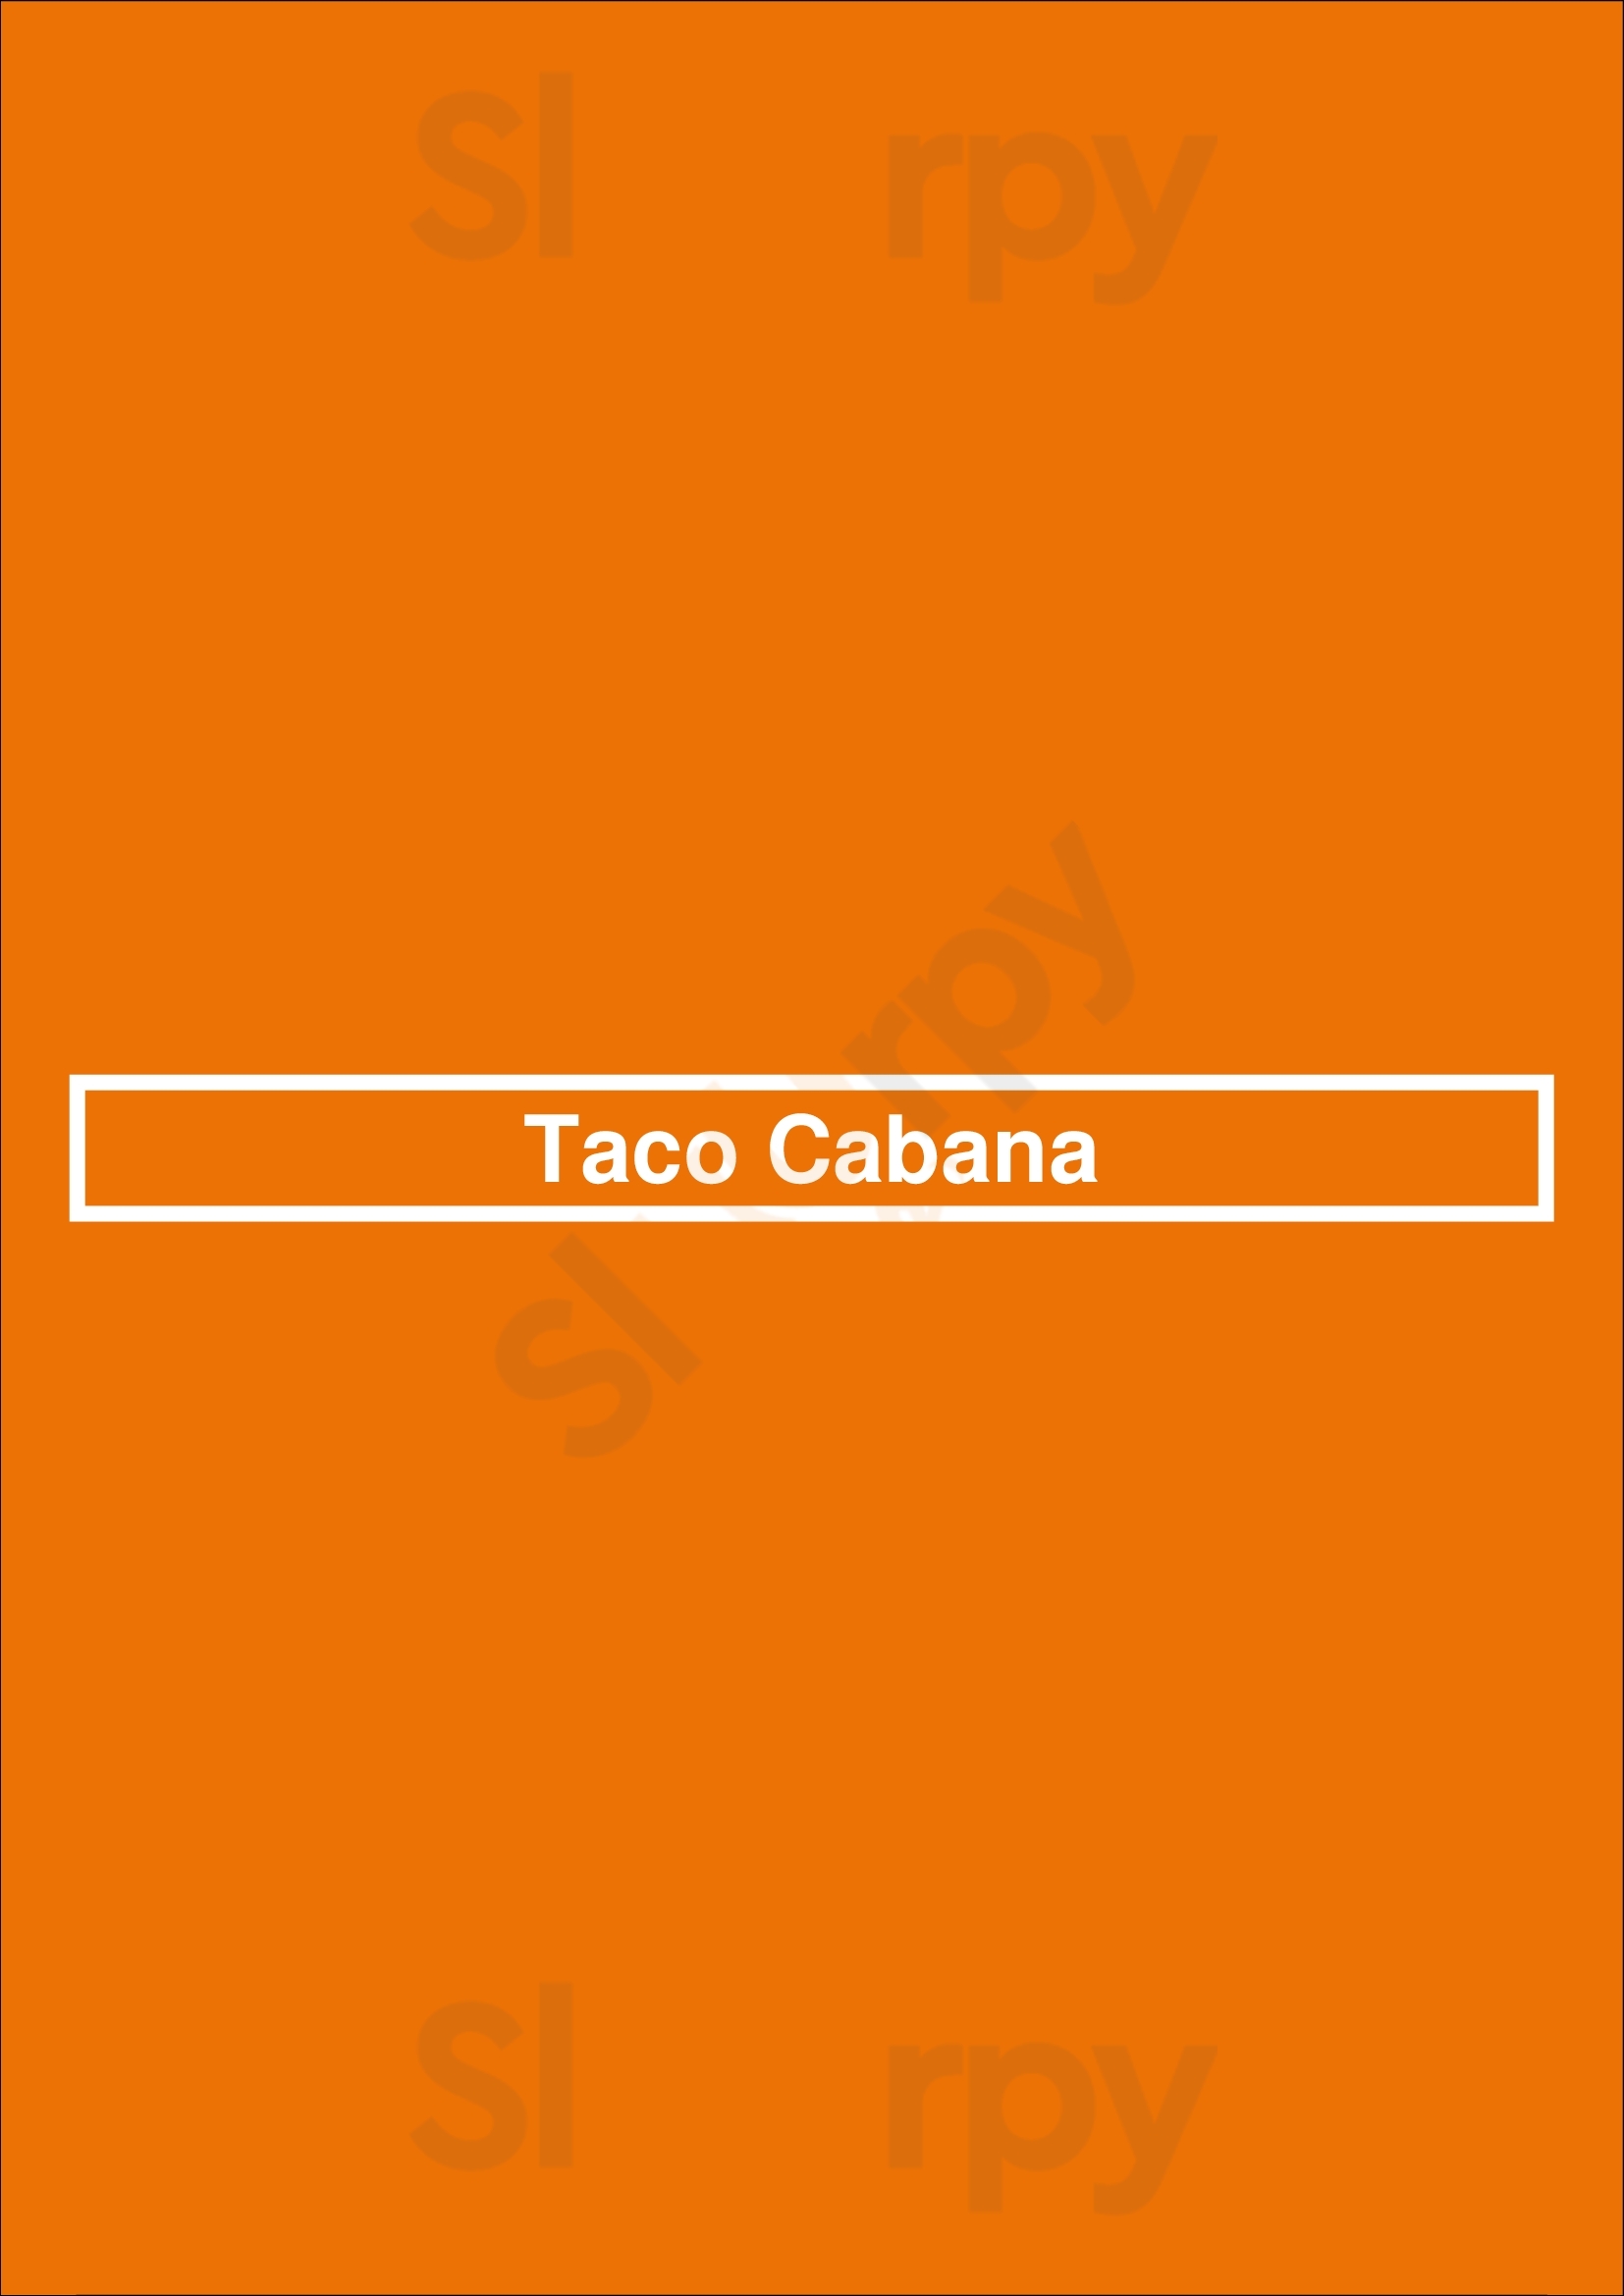 Taco Cabana Plano Menu - 1